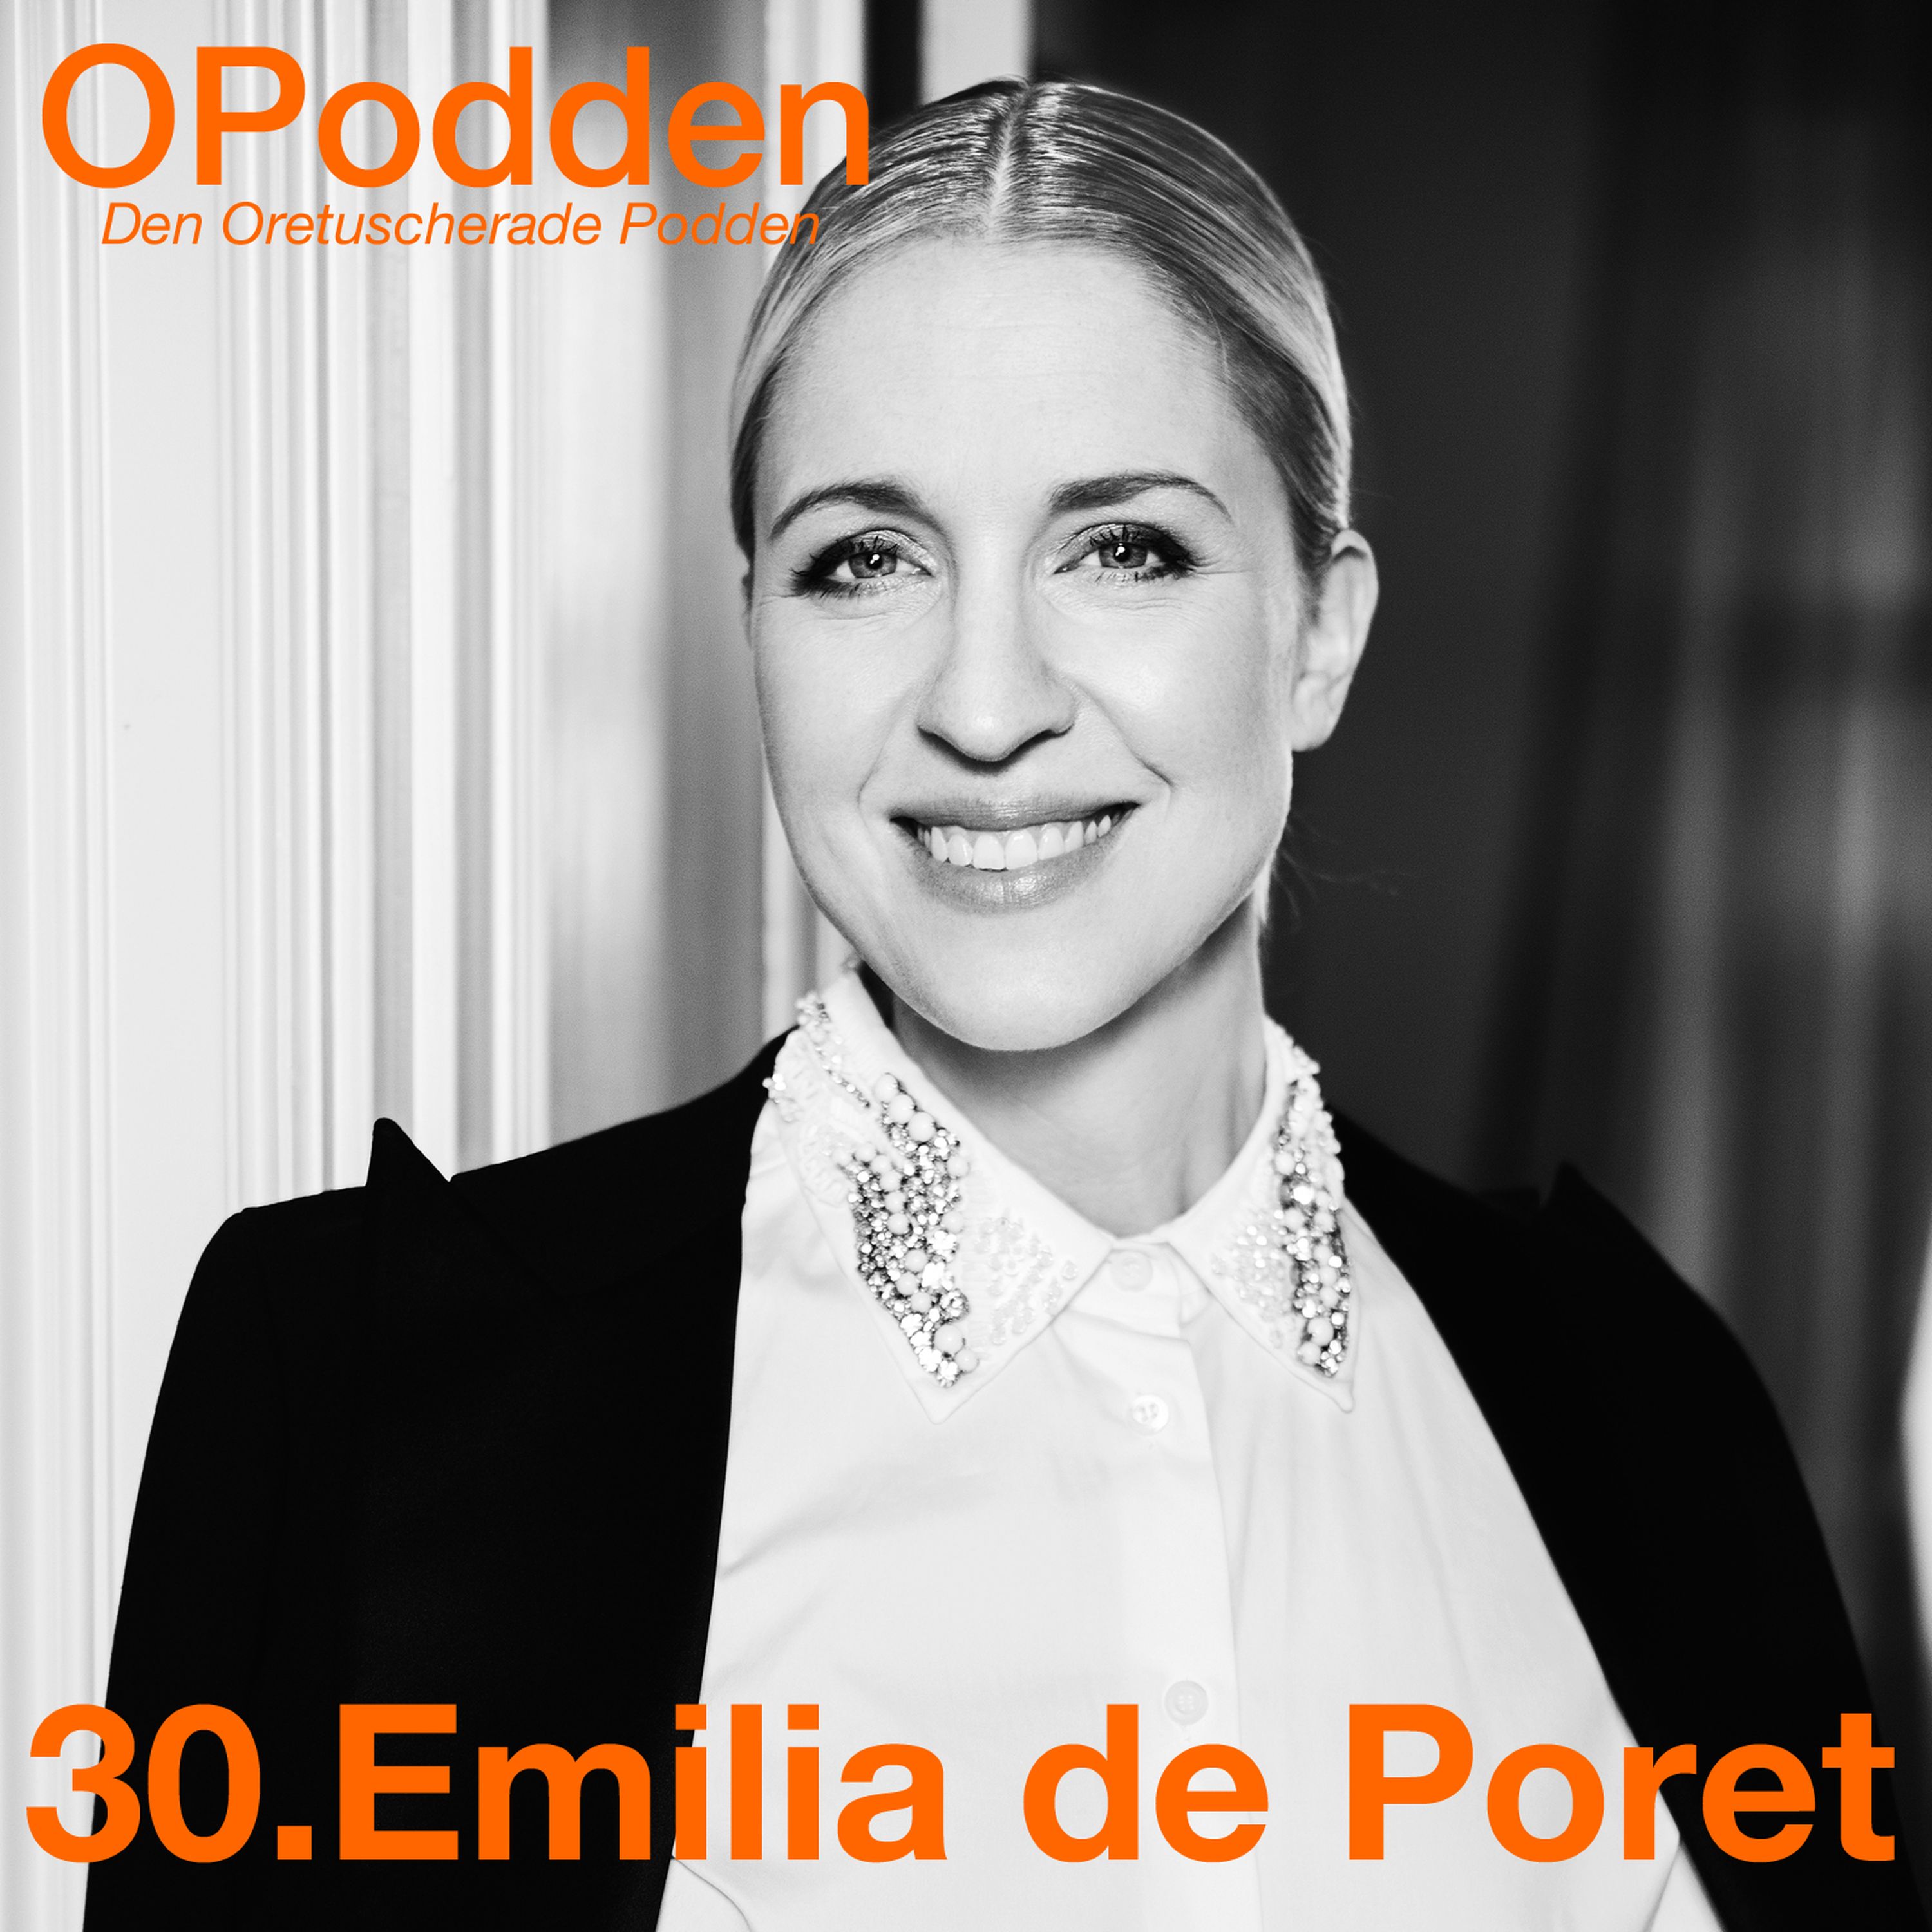 30.Emilia de Poret